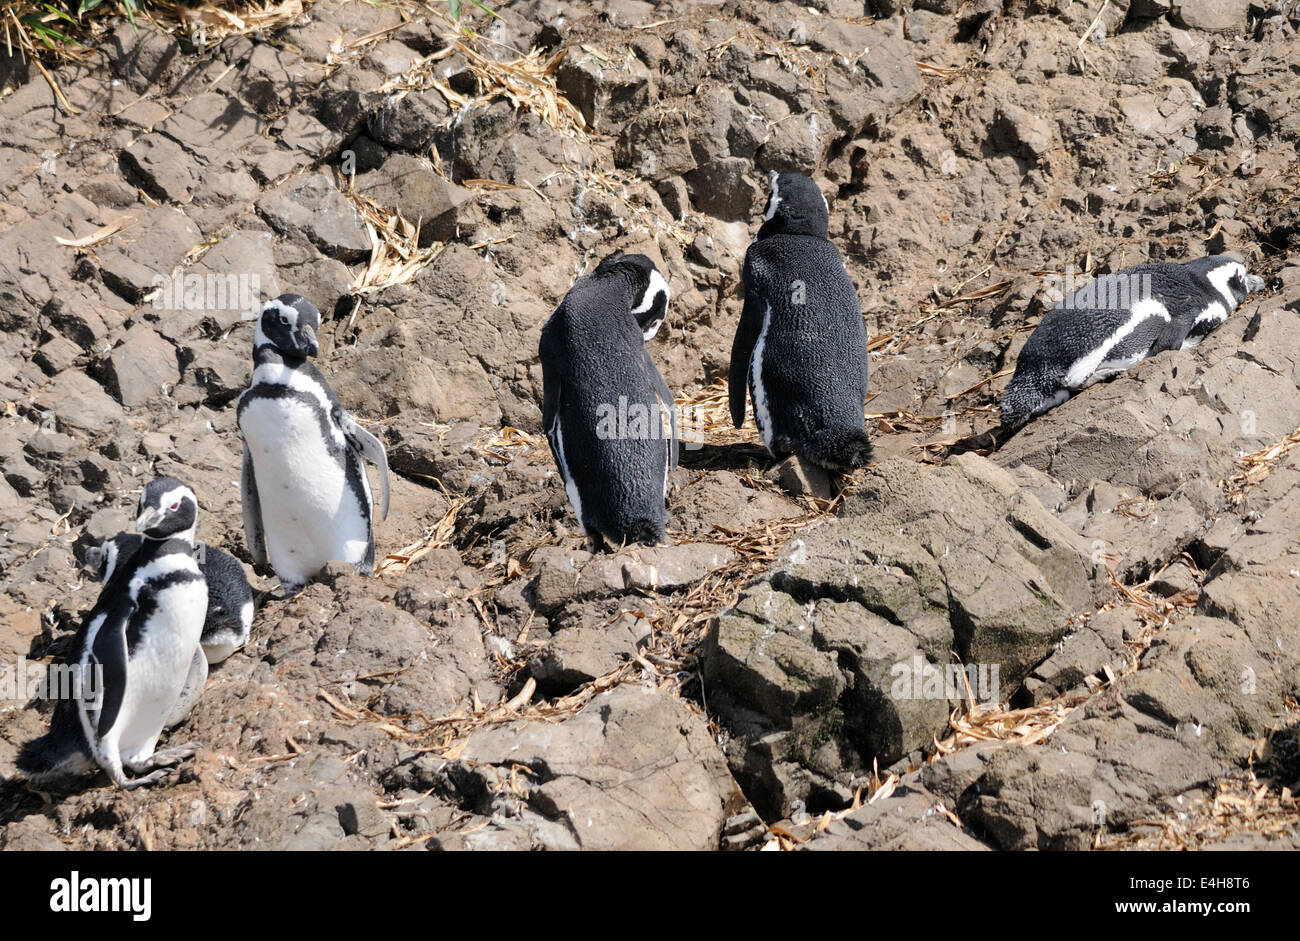 Megellanic Penguins (Spheniscus magellanicus) at their sea cliff nesting colony at Puñihuil. Puñihuil, Isla Grande de Chiloe, Stock Photo